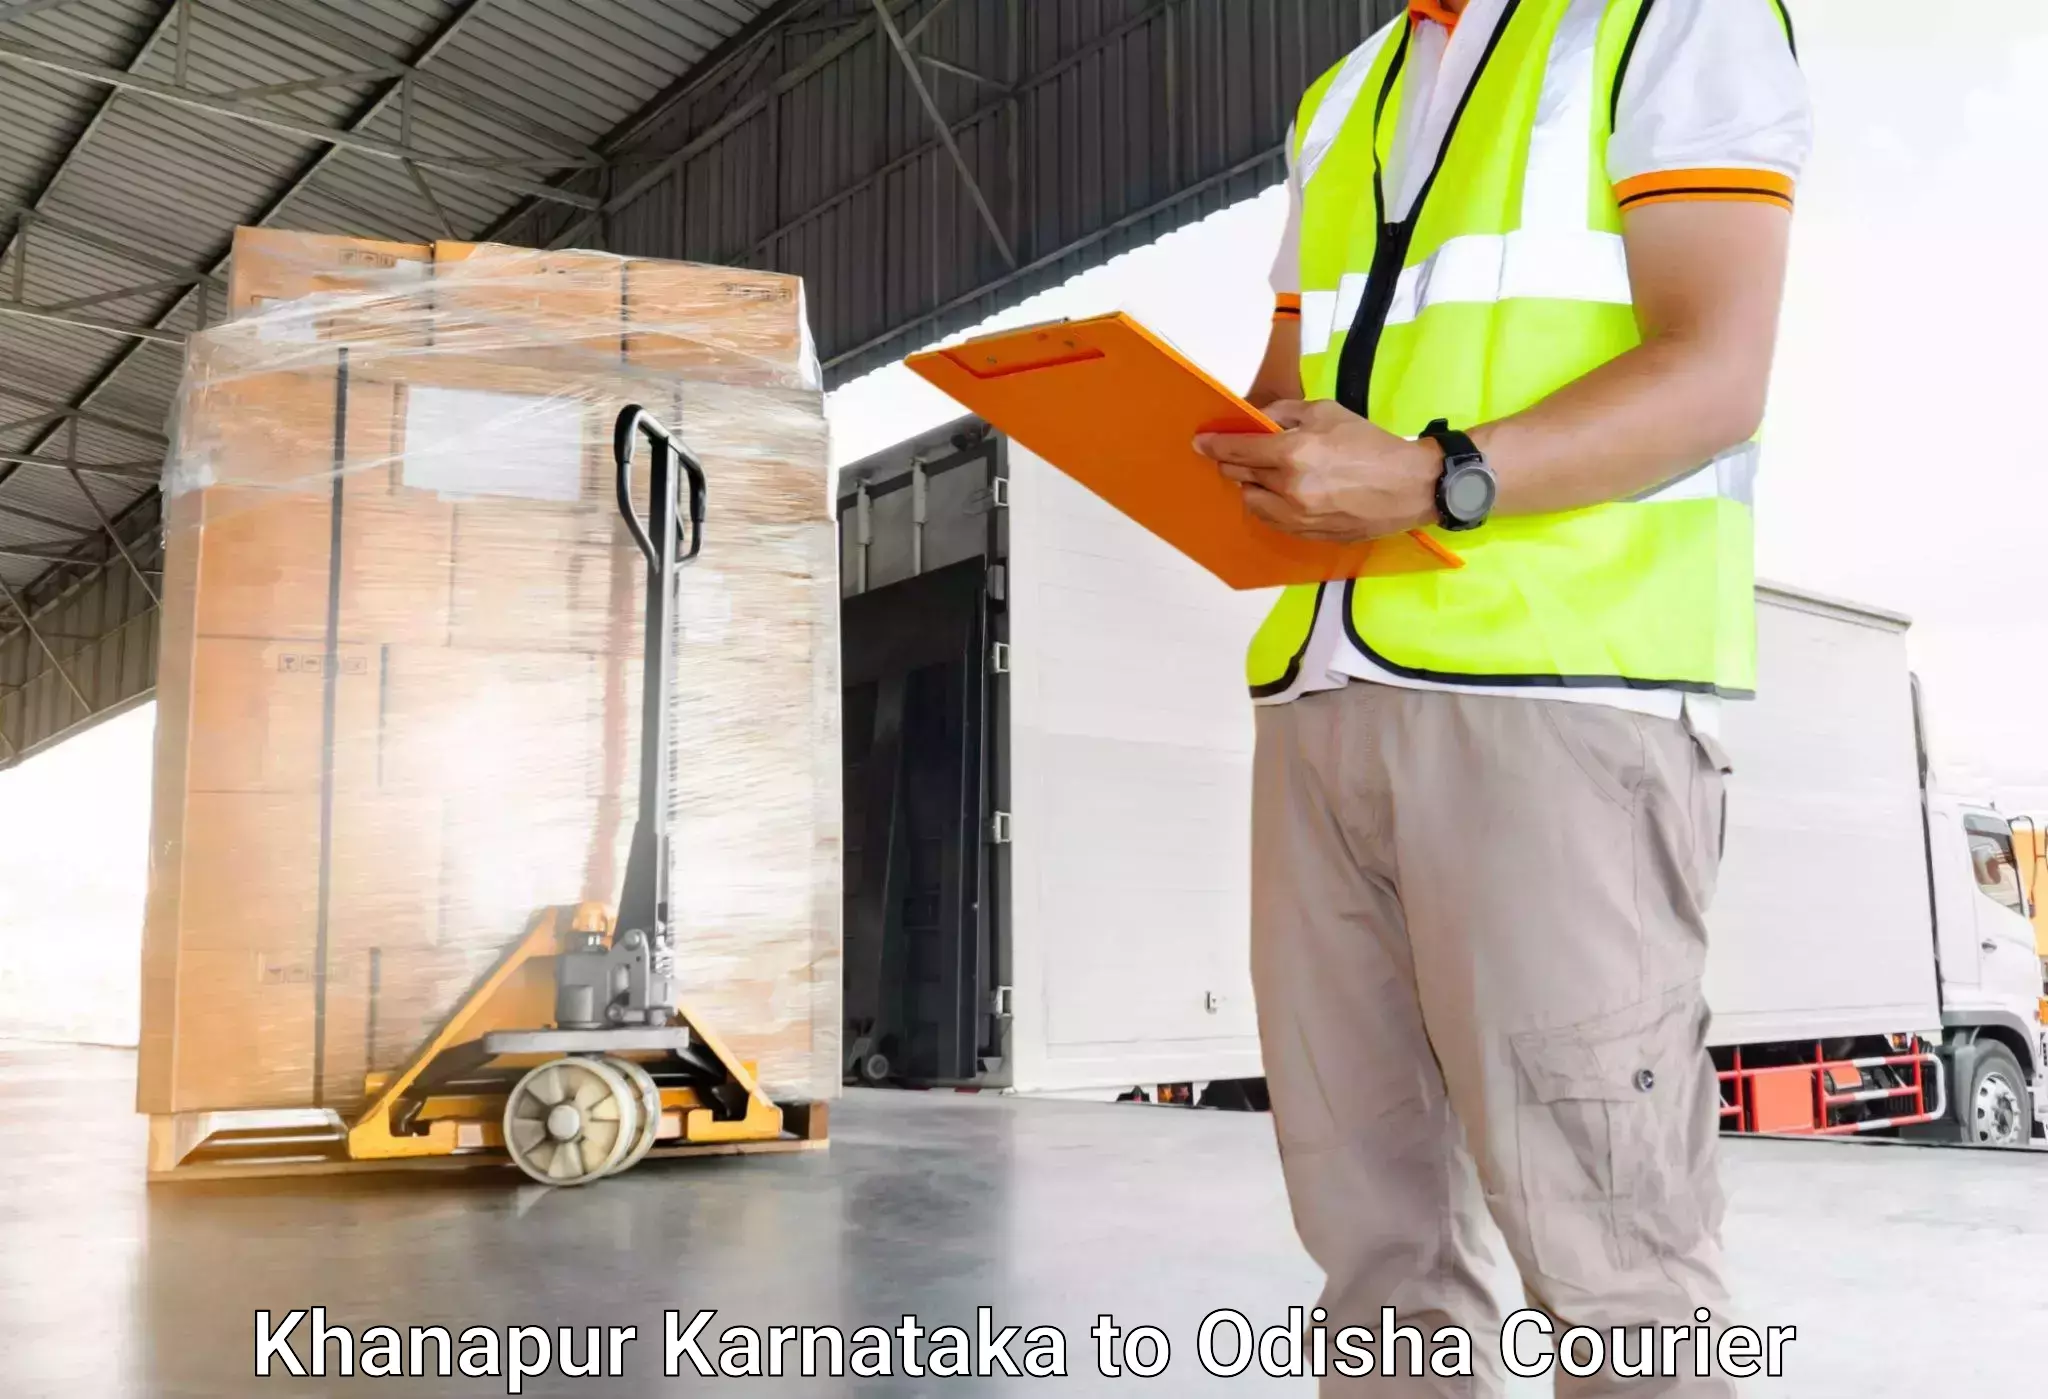 Baggage shipping rates calculator Khanapur Karnataka to Dhamanagar